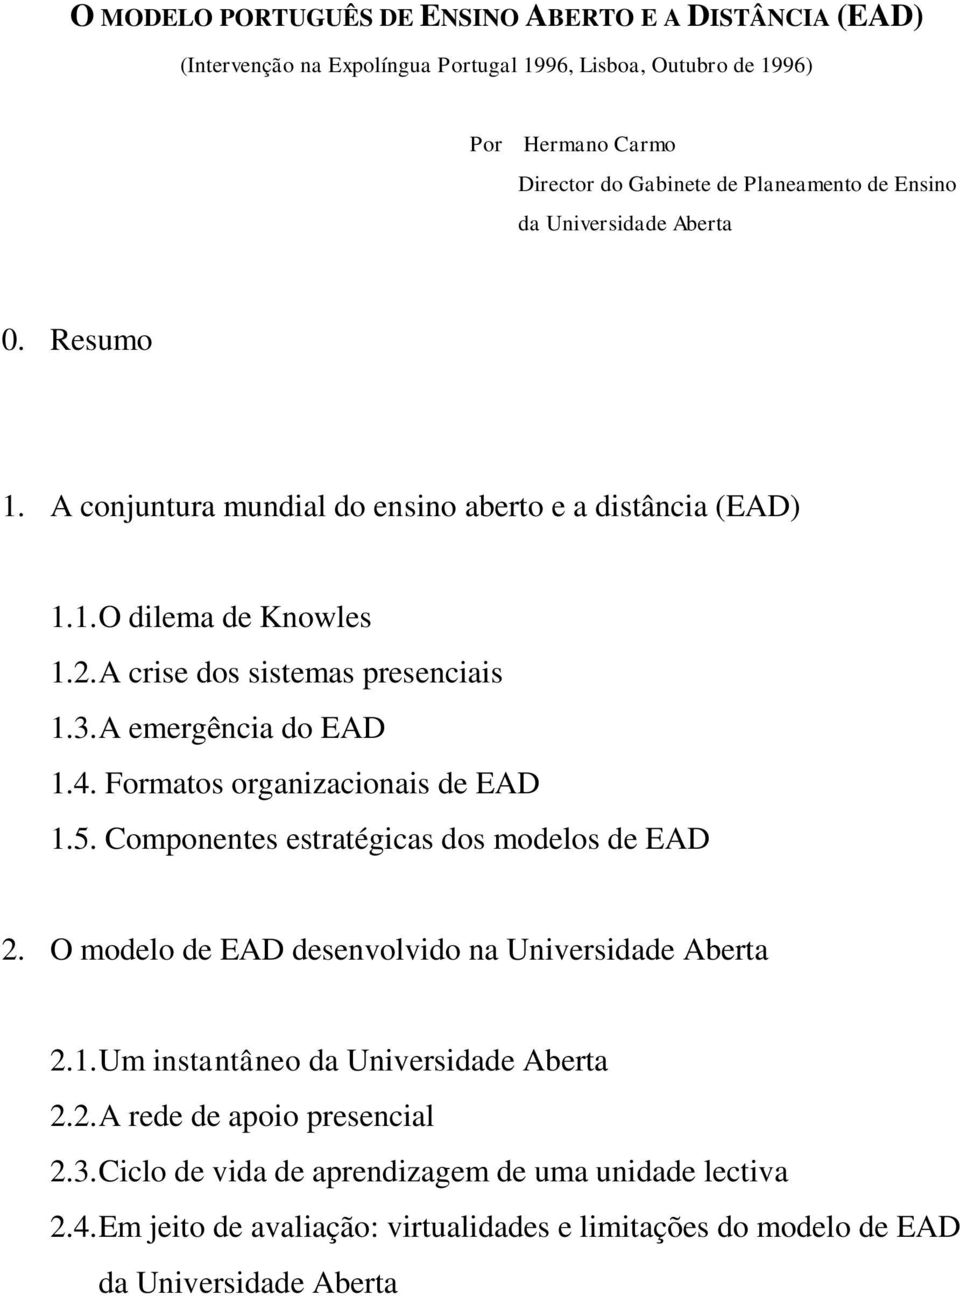 A emergência do EAD 1.4. Formatos organizacionais de EAD 1.5. Componentes estratégicas dos modelos de EAD 2. O modelo de EAD desenvolvido na Universidade Aberta 2.1. Um instantâneo da Universidade Aberta 2.